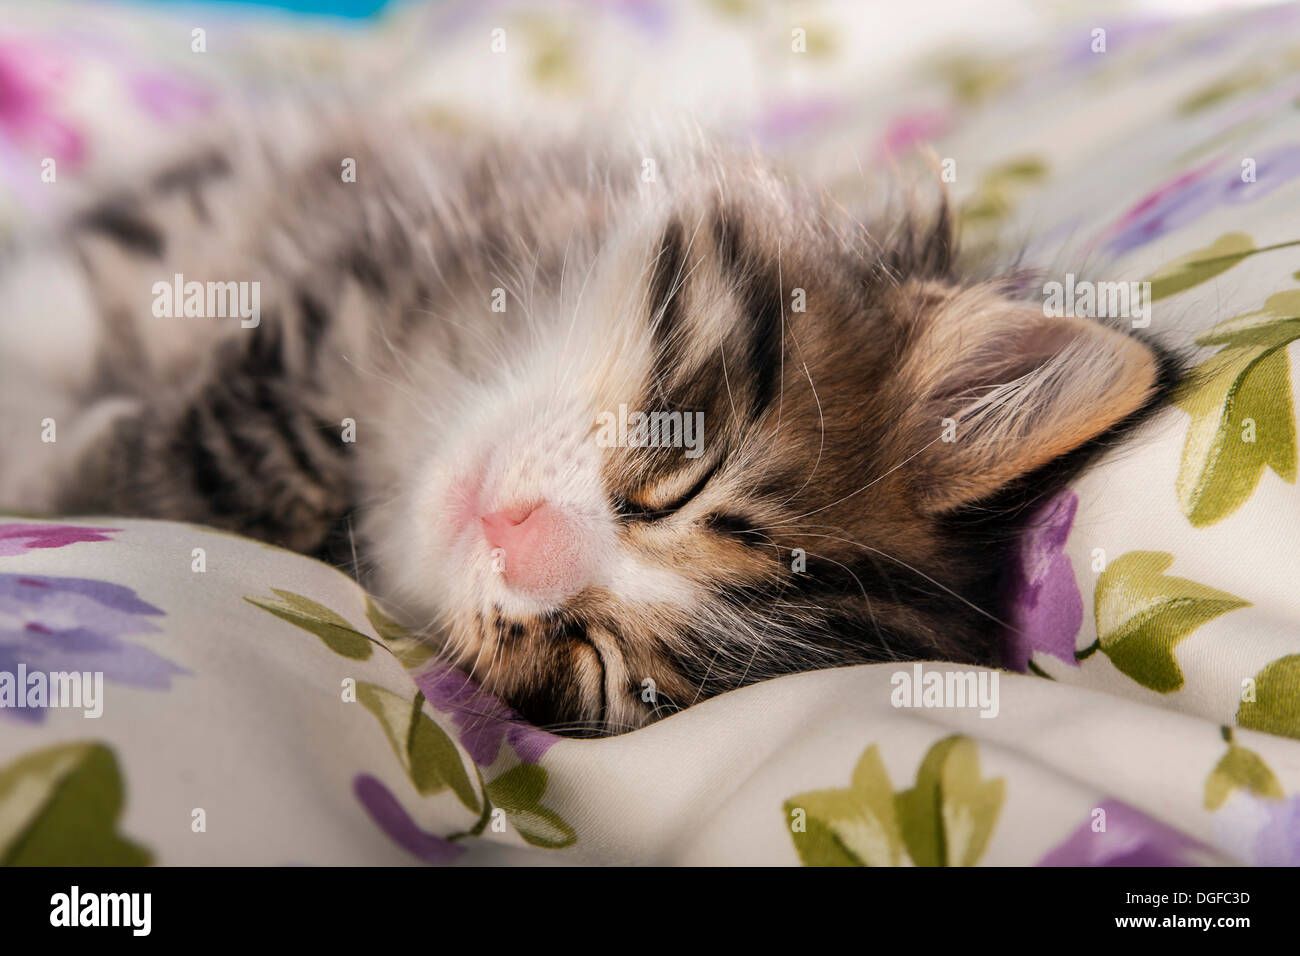 Siberian Forest Cat, sleeping kitten Stock Photo